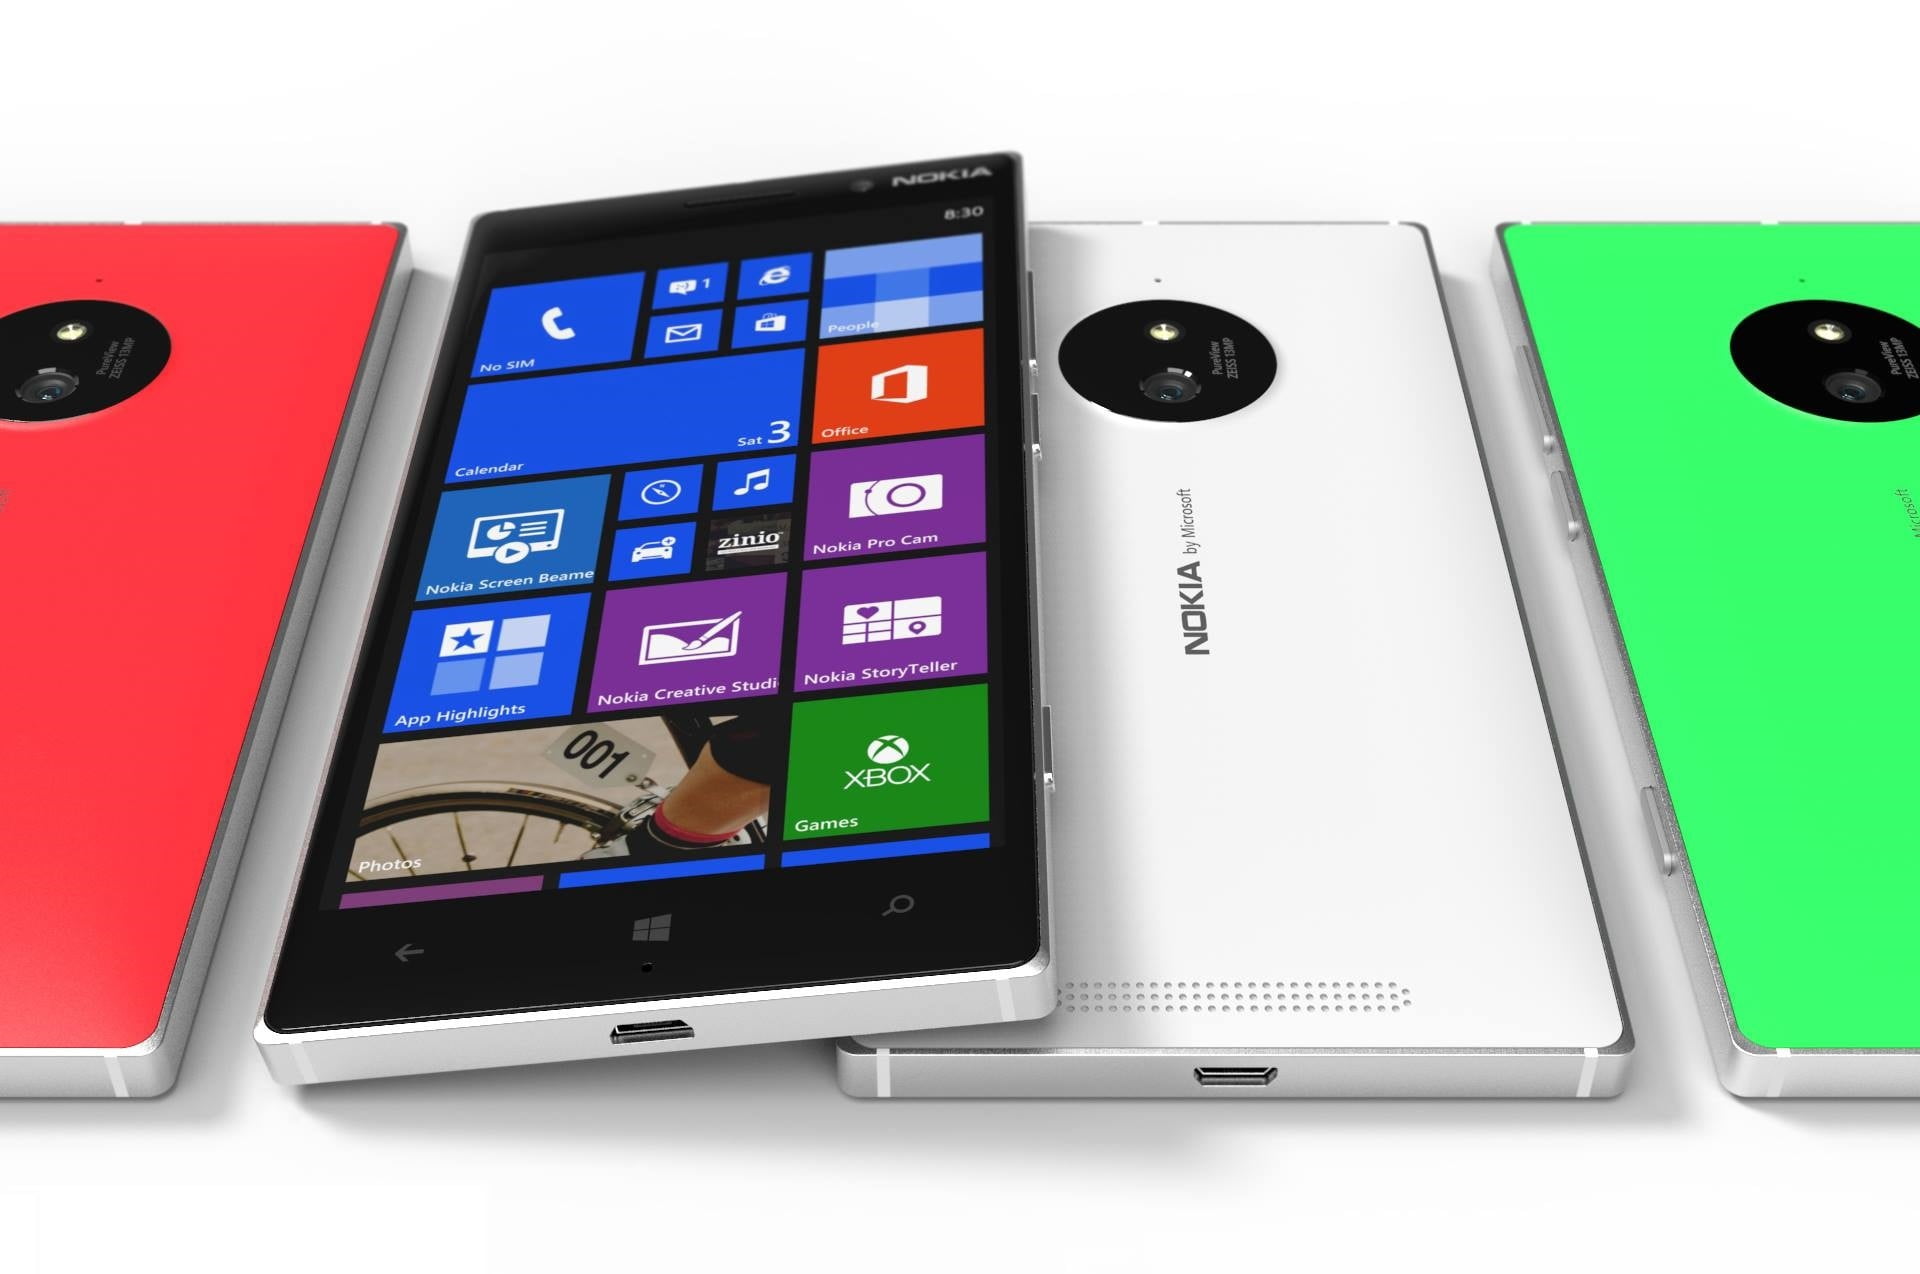 white Nokia smartphone, Concept, Red, Green, Tesla, Lumia, 830